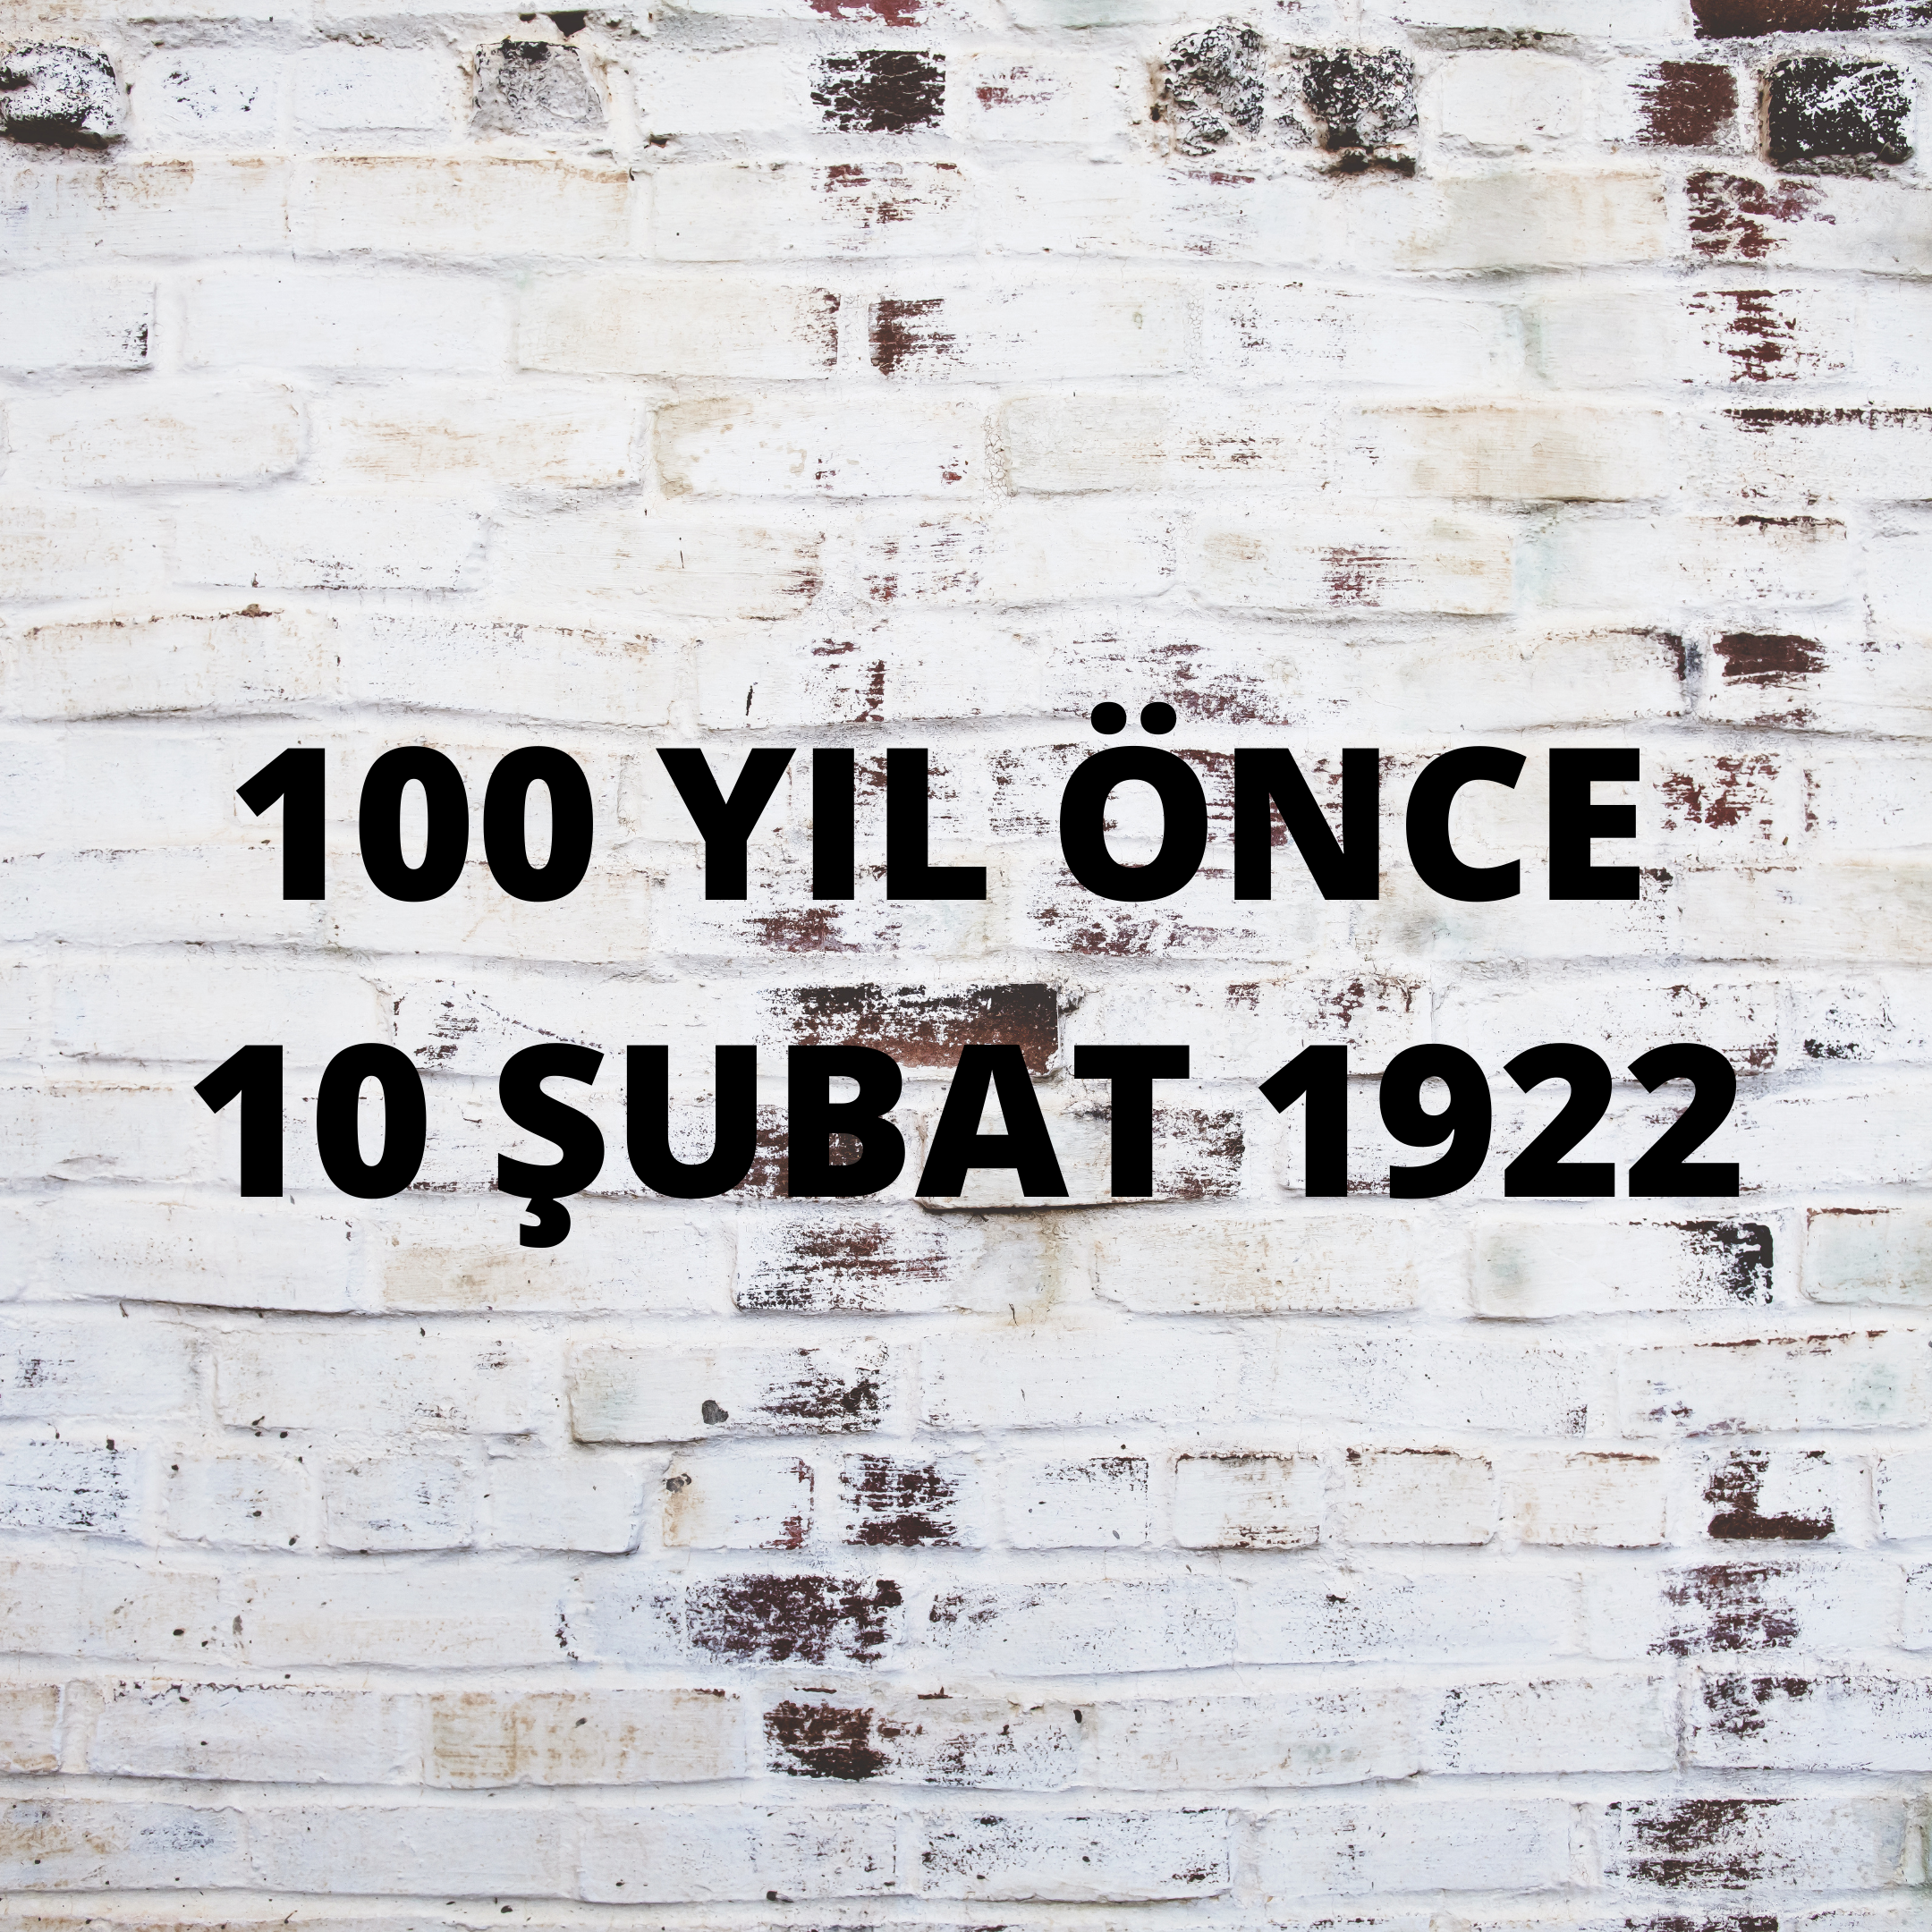 100 YIL ÖNCE 10 ŞUBAT 1922